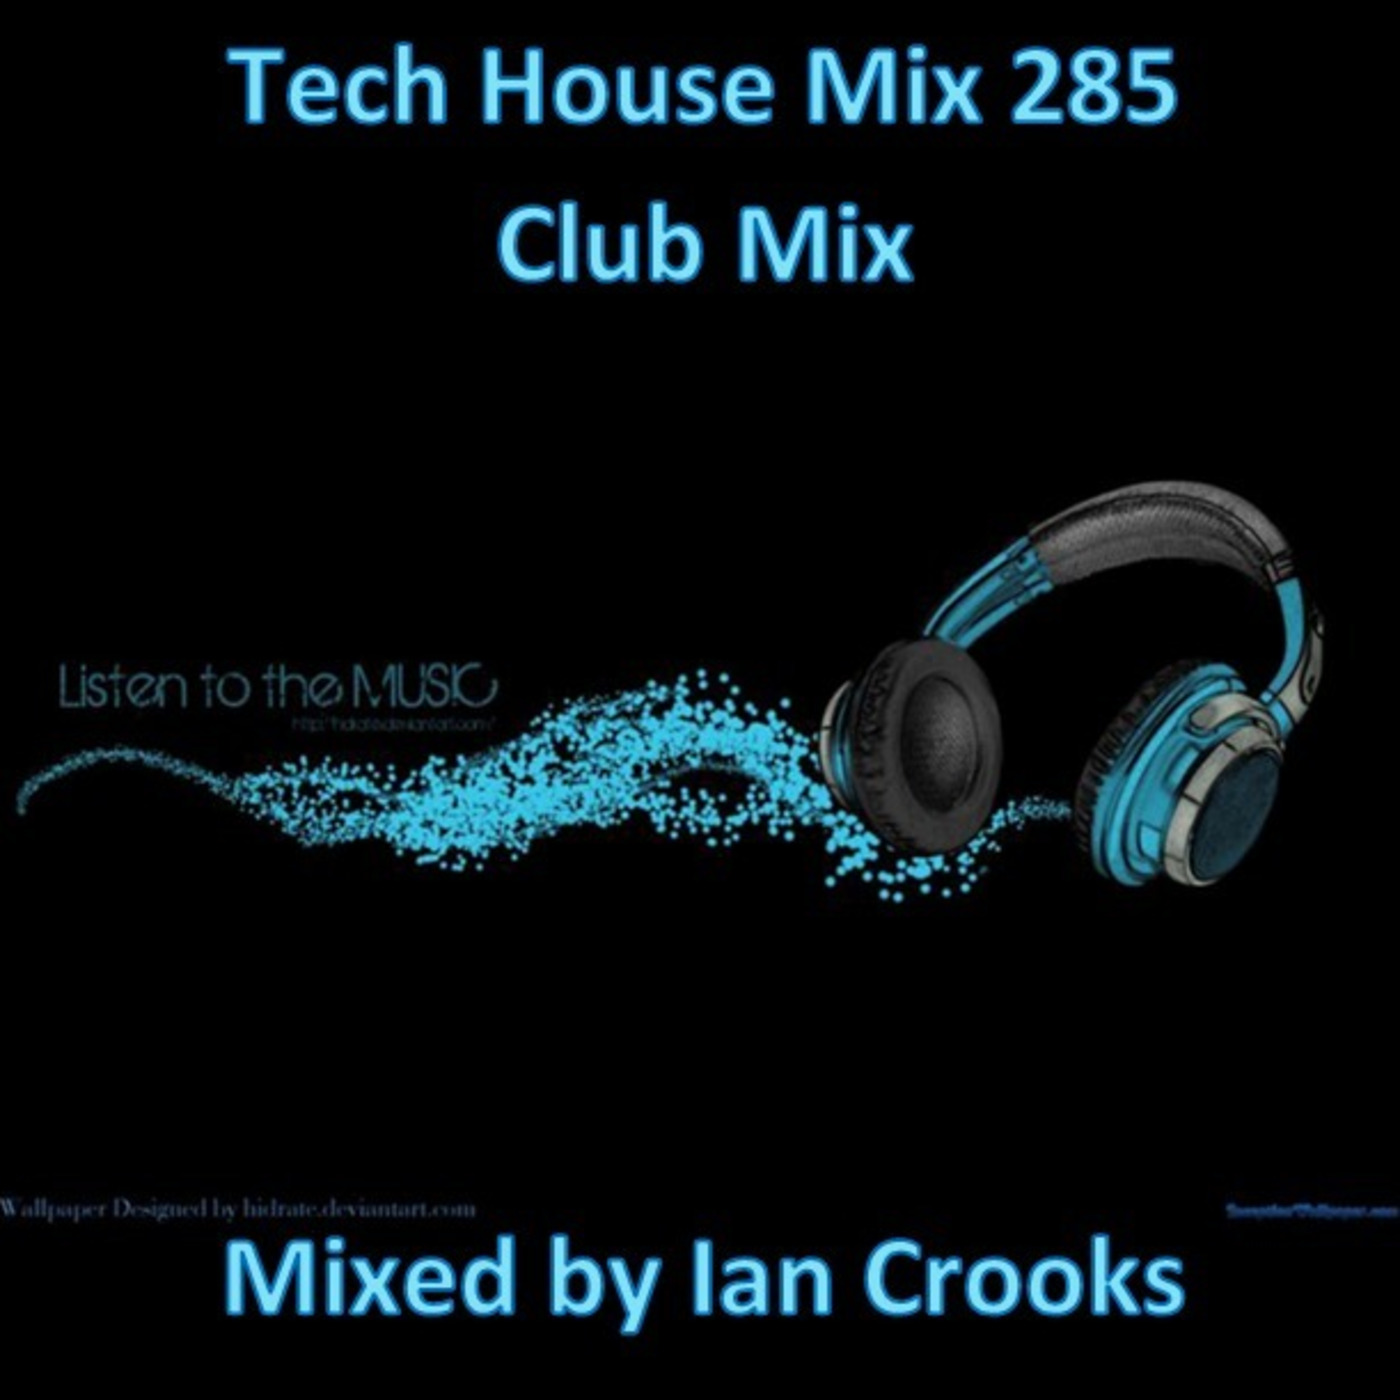 Ian Crooks Mix 285 (Club Mix)